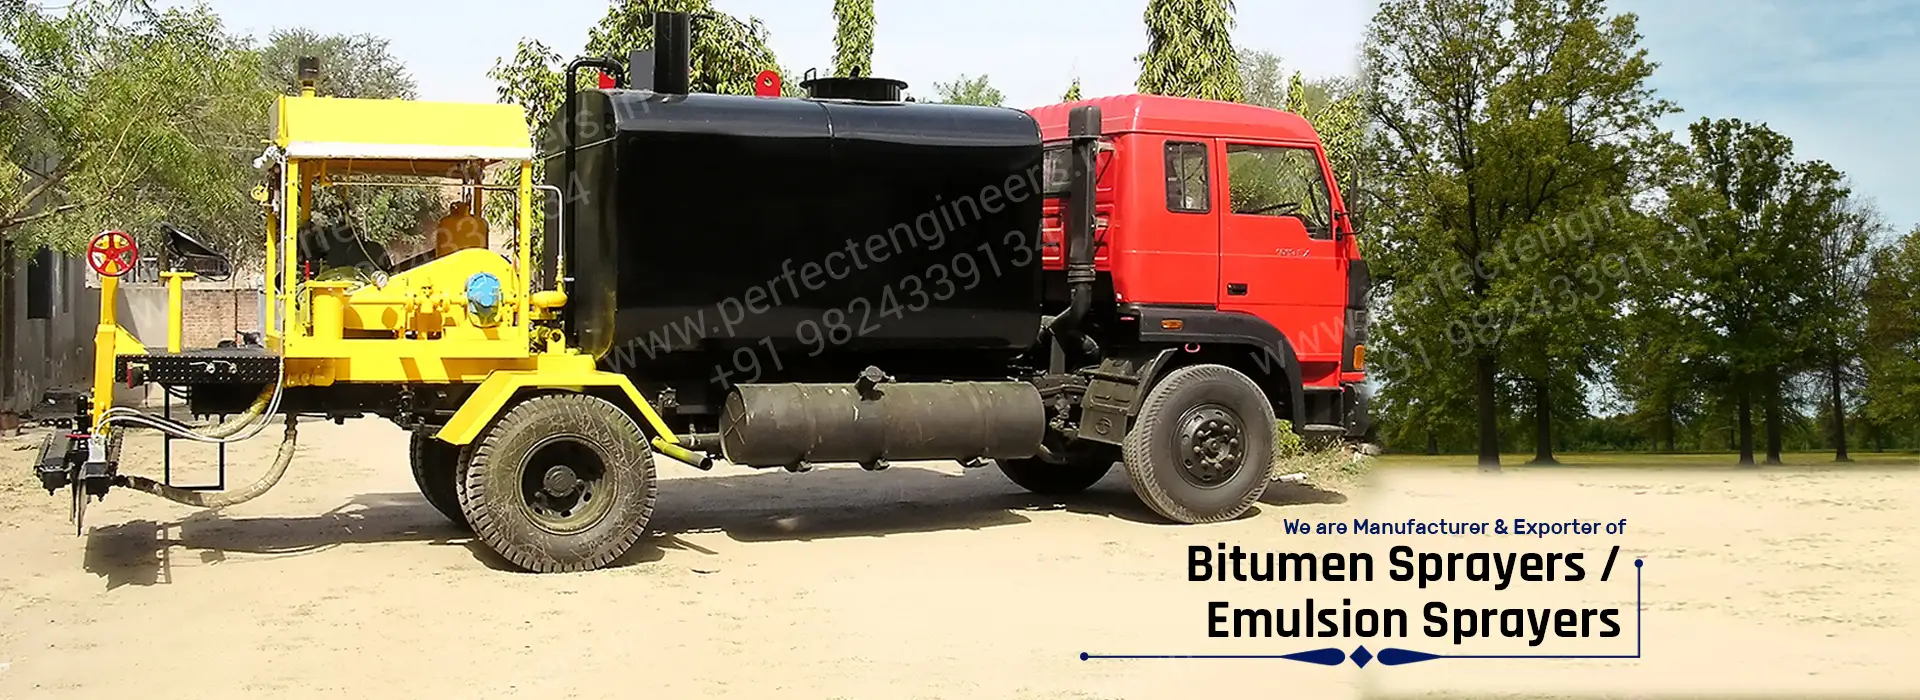 Bitumen sprayer manufacturers